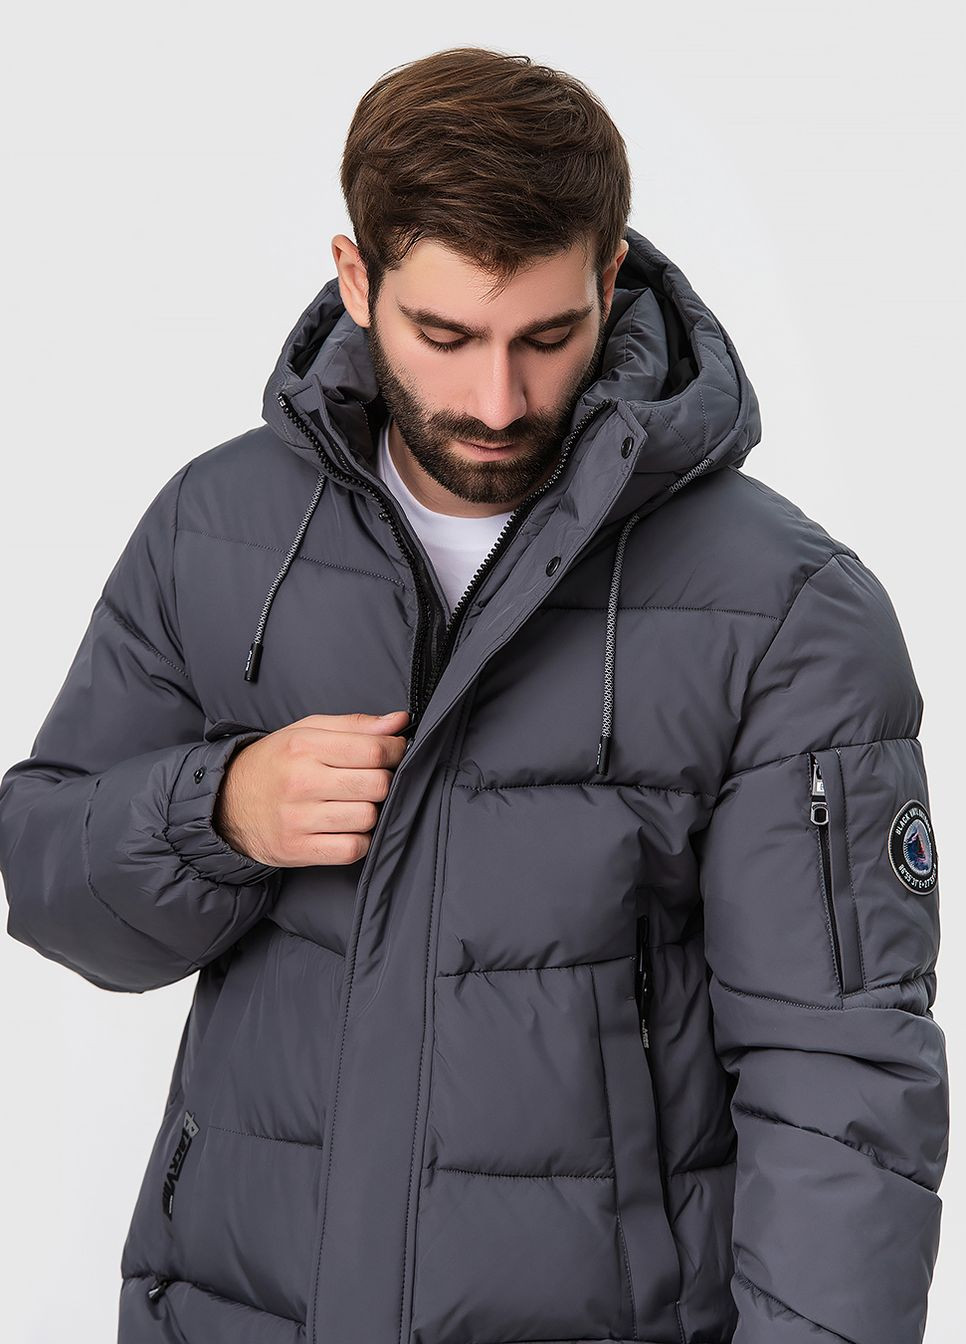 Сіра зимня подовжена куртка з капюшоном модель 23-2230 Black Vinyl 23-2030